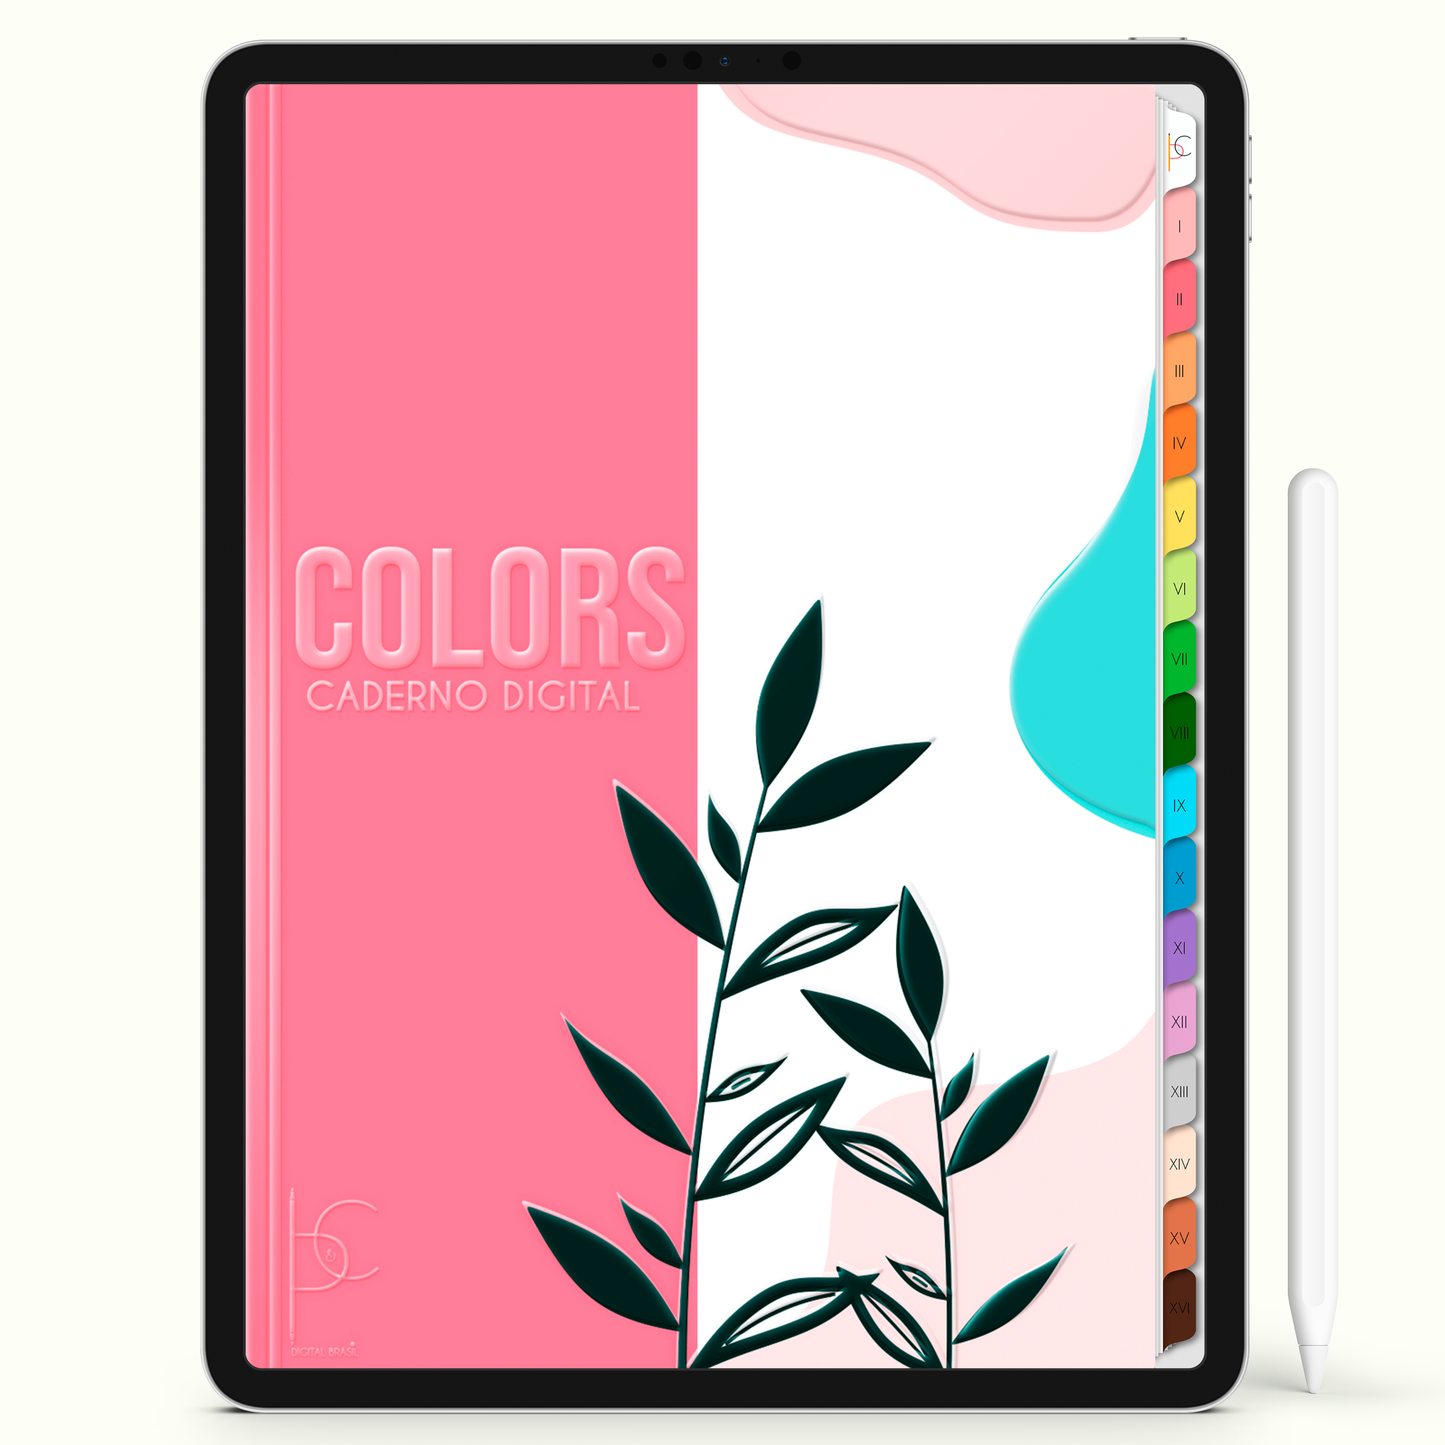 Caderno Digital Colors Estudo Diário 16 Matérias • Para iPad e Tablet Android • Download instantâneo • Sustentável